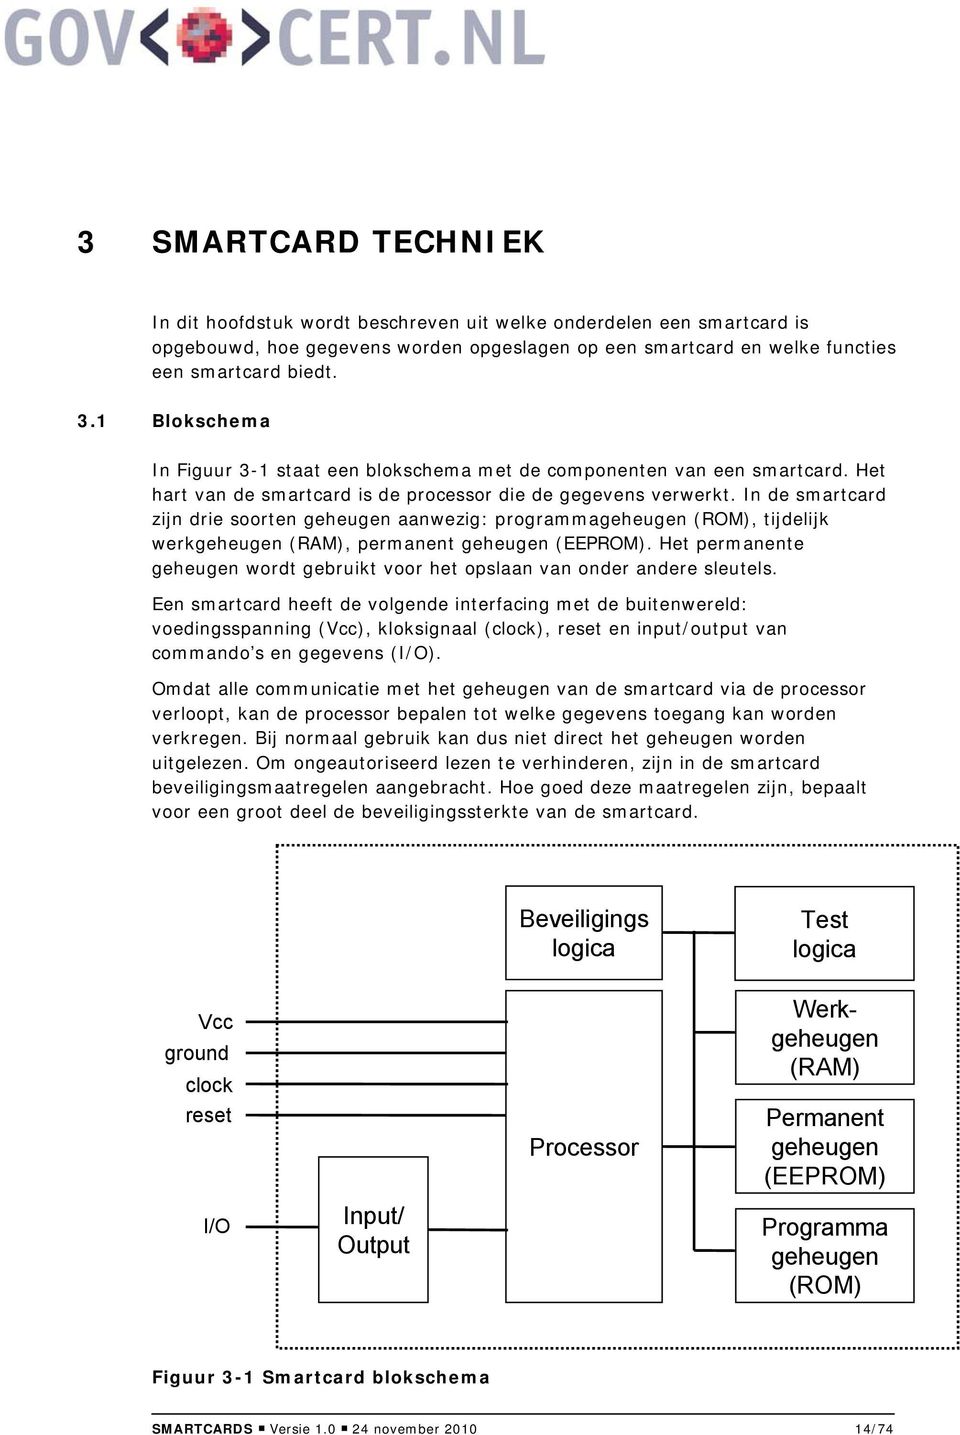 In de smartcard zijn drie soorten geheugen aanwezig: programmageheugen (ROM), tijdelijk werkgeheugen (RAM), permanent geheugen (EEPROM).